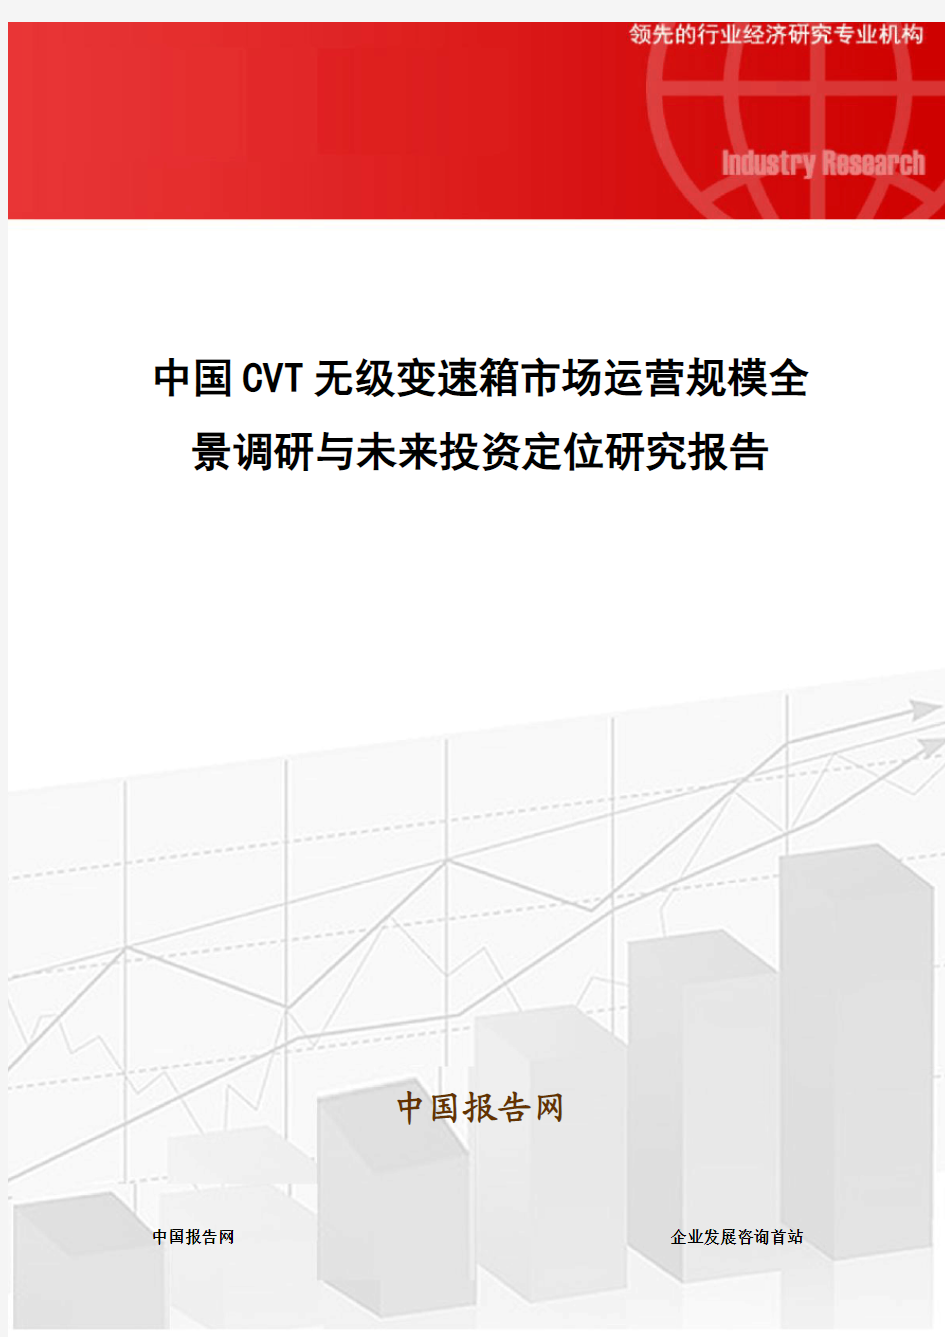 中国CVT无级变速箱市场运营规模全景调研与未来投资定位研究报告